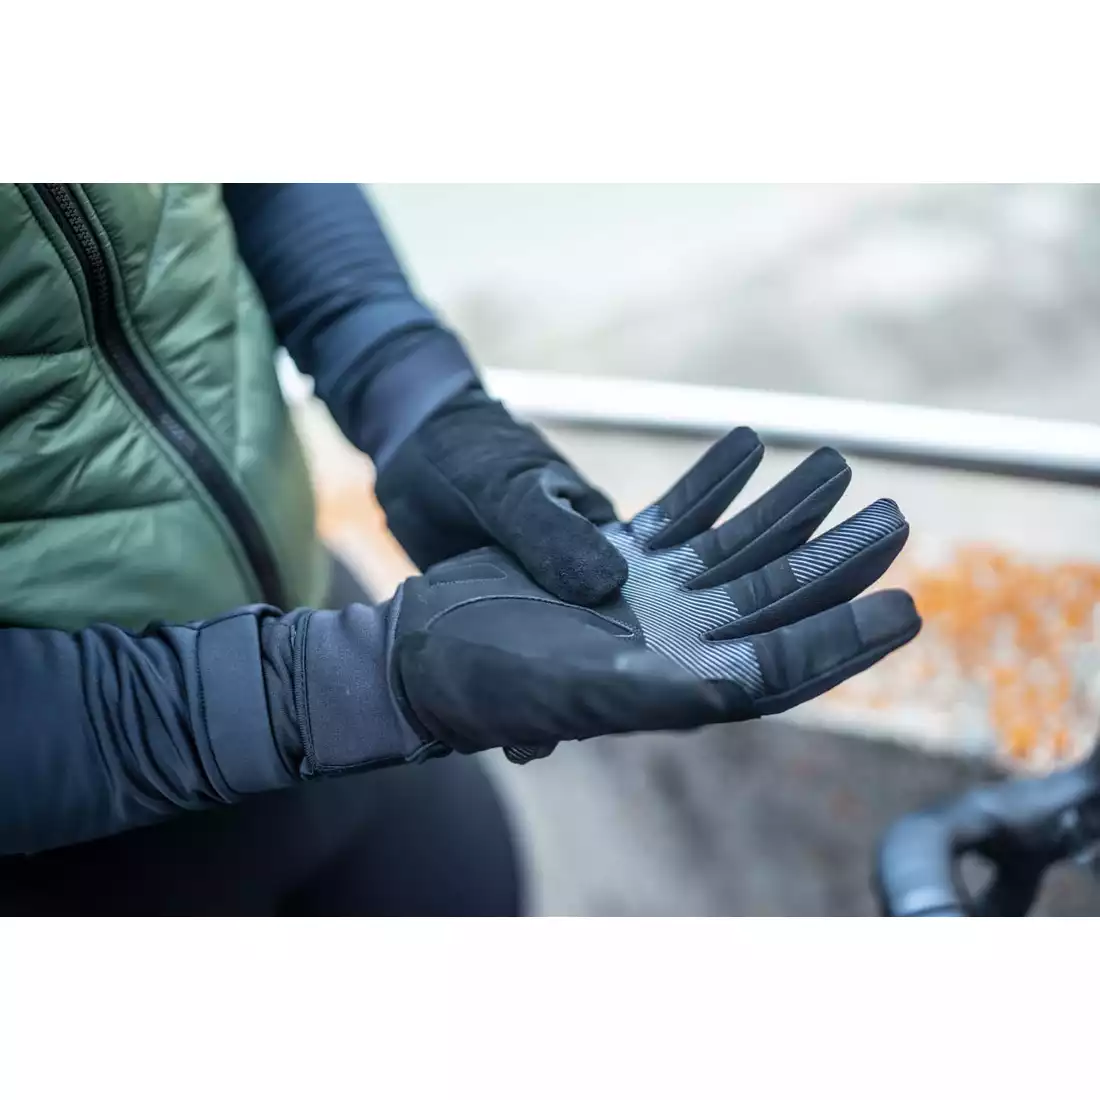 ROGELLI NOVA mănuși de iarnă pentru ciclism, negre